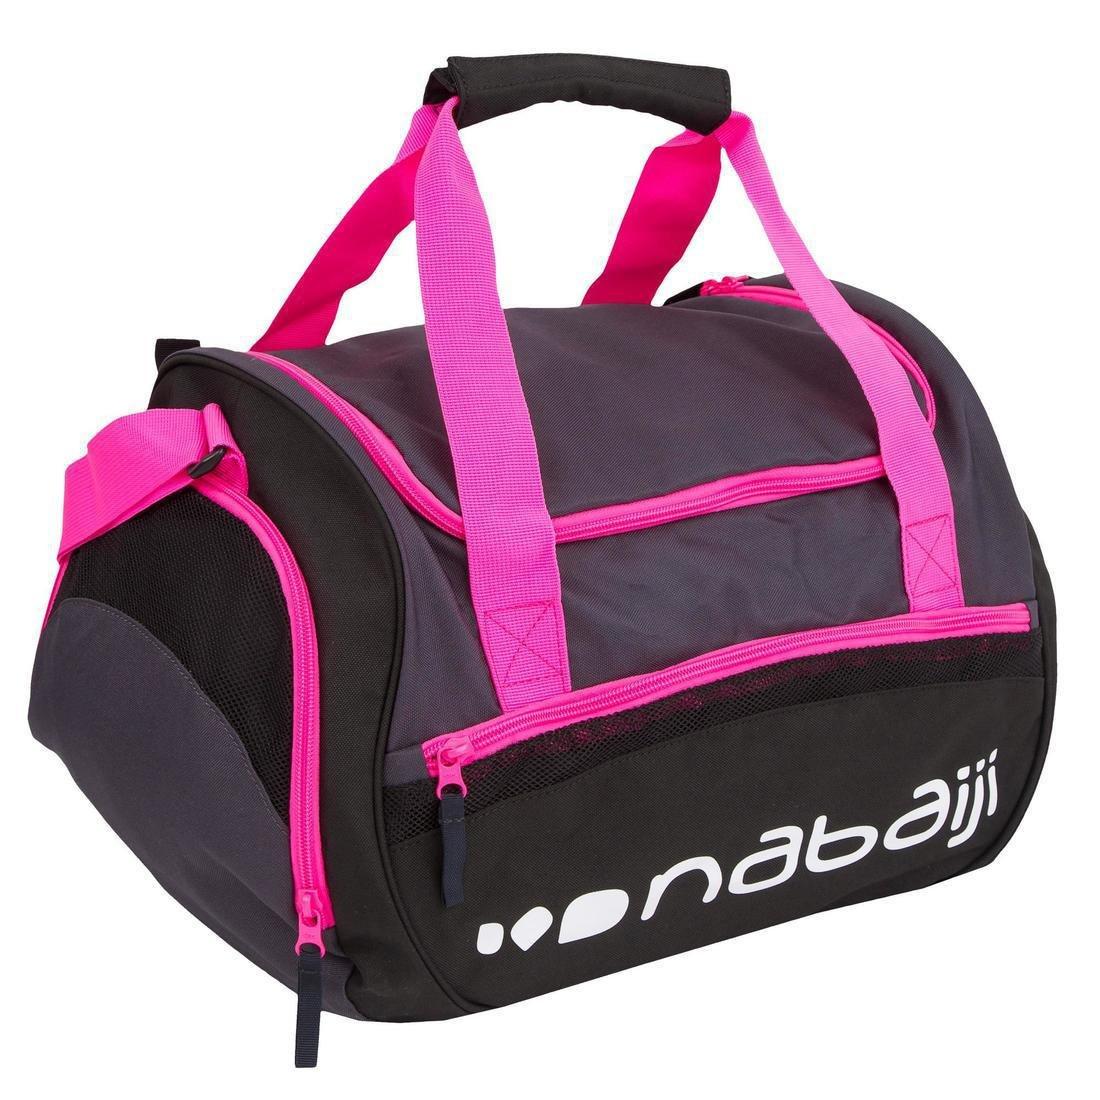 NABAIJI - Pool Bag 500, Black